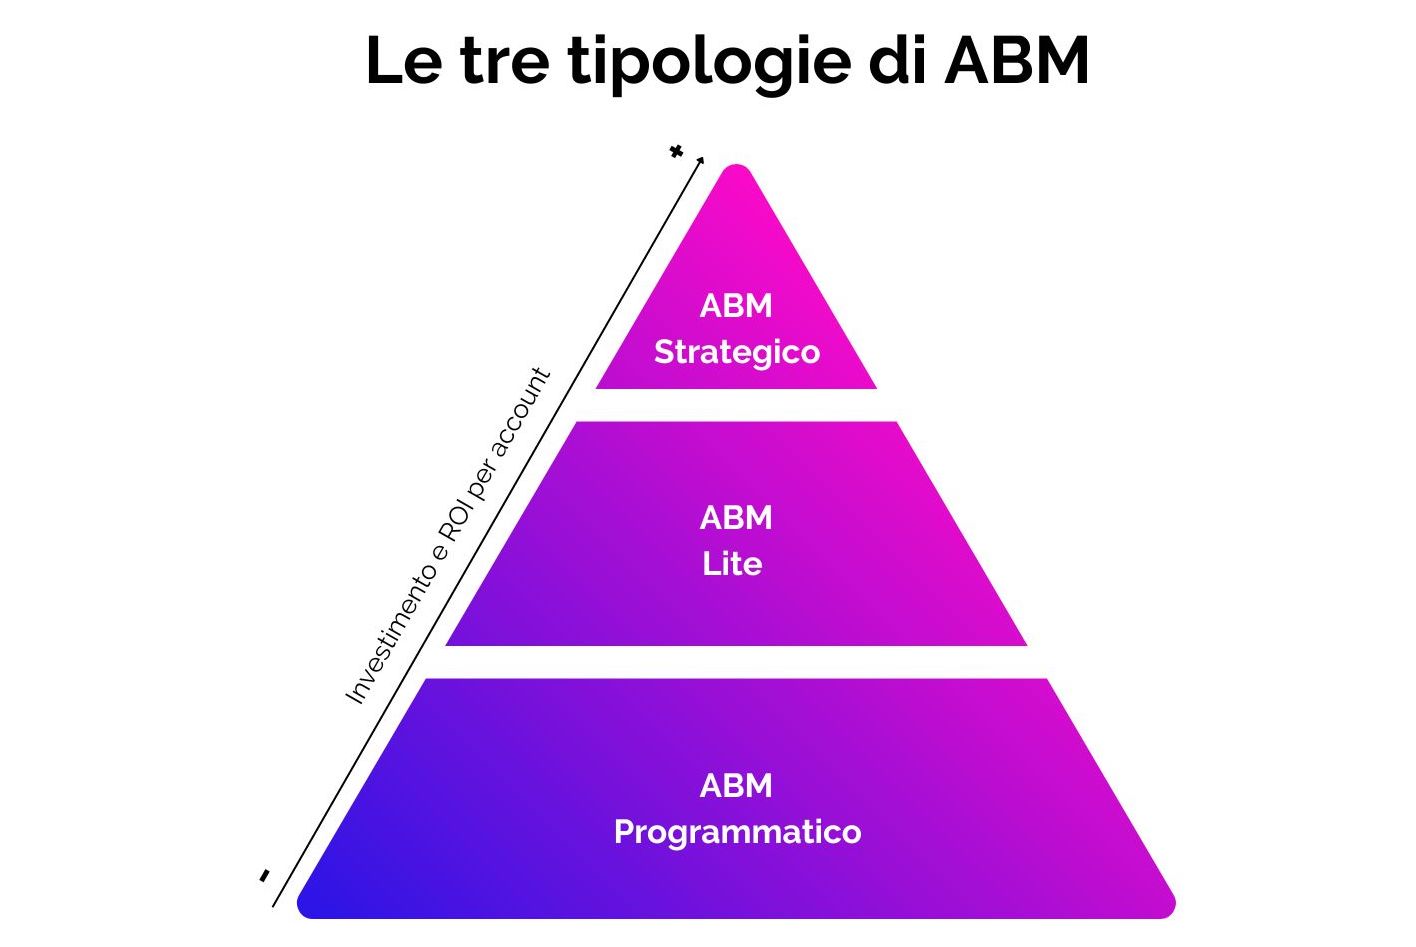 Piramide con i 3 approcci di Account Based Marketing